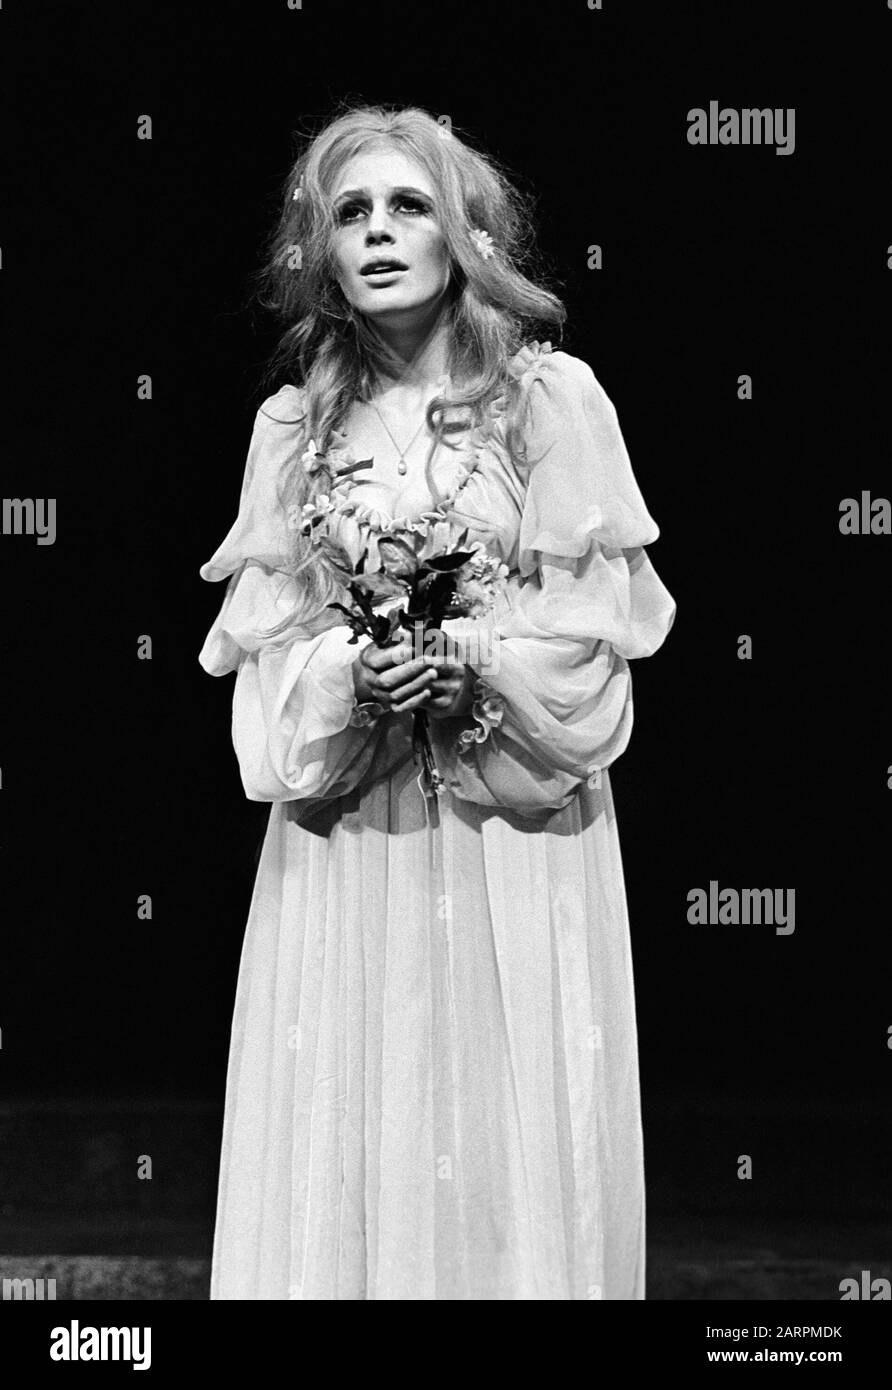 Marianne Faithfull come Ophelia IN FRAZIONE di Shakespeare diretto da Tony Richardson alla Roundhouse, Londra nel 1969. Marianne Faithfull, cantante, cantautrice e attrice inglese, nato il 29 dicembre 1946 a Hampstead, Londra Foto Stock